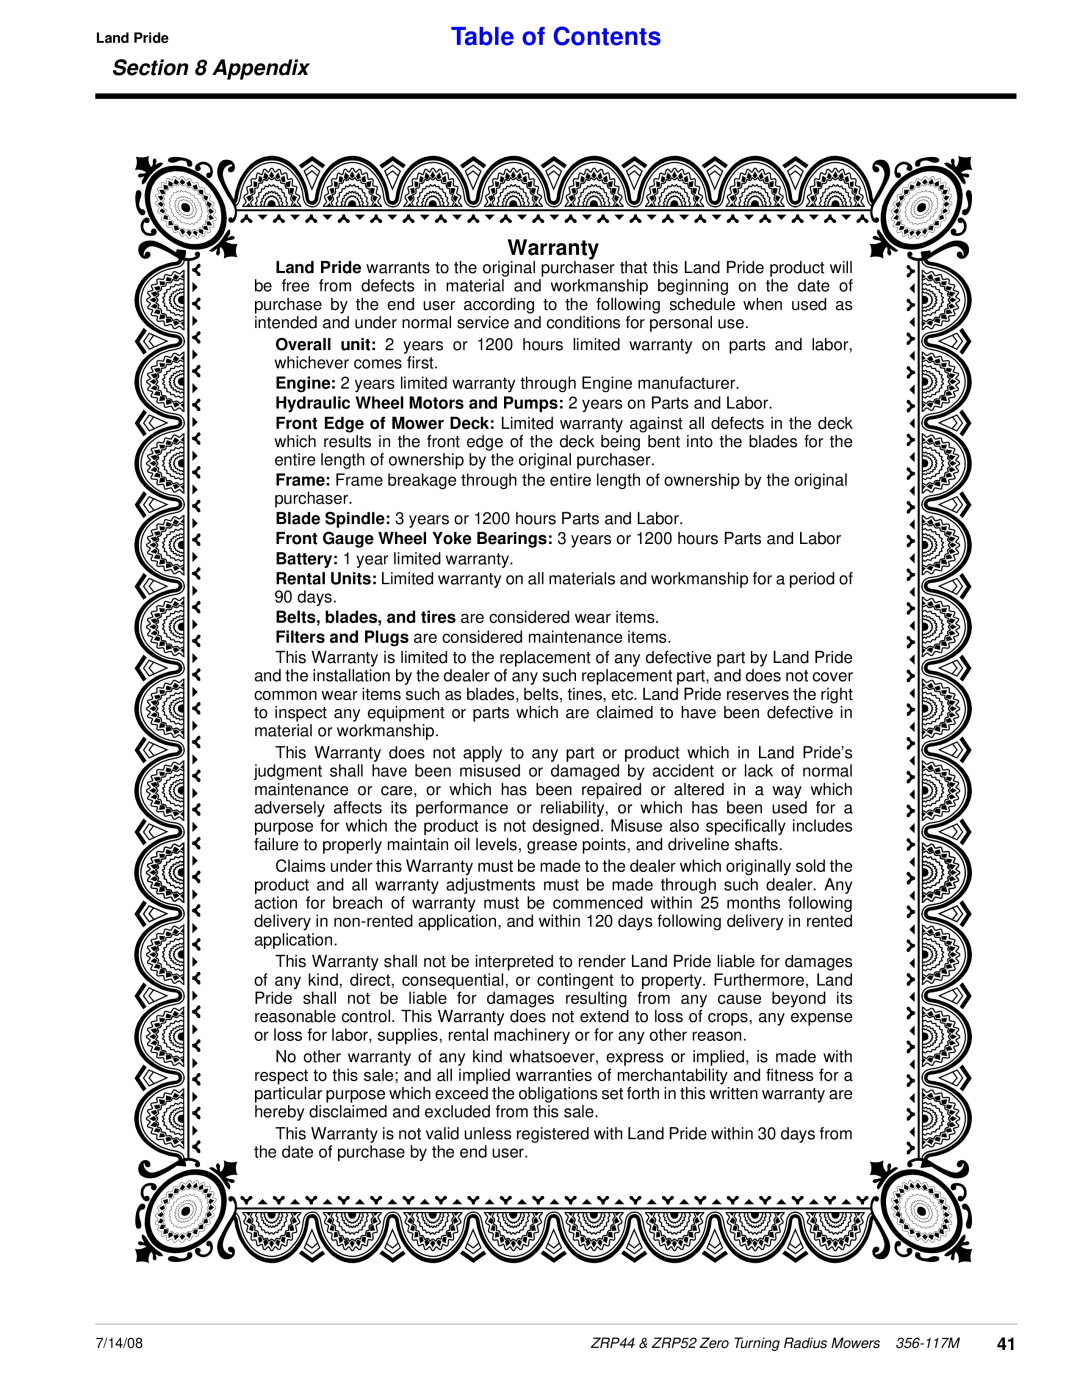 Land Pride ZRP44, ZRP52 manual Warranty, Table of Contents, Appendix 